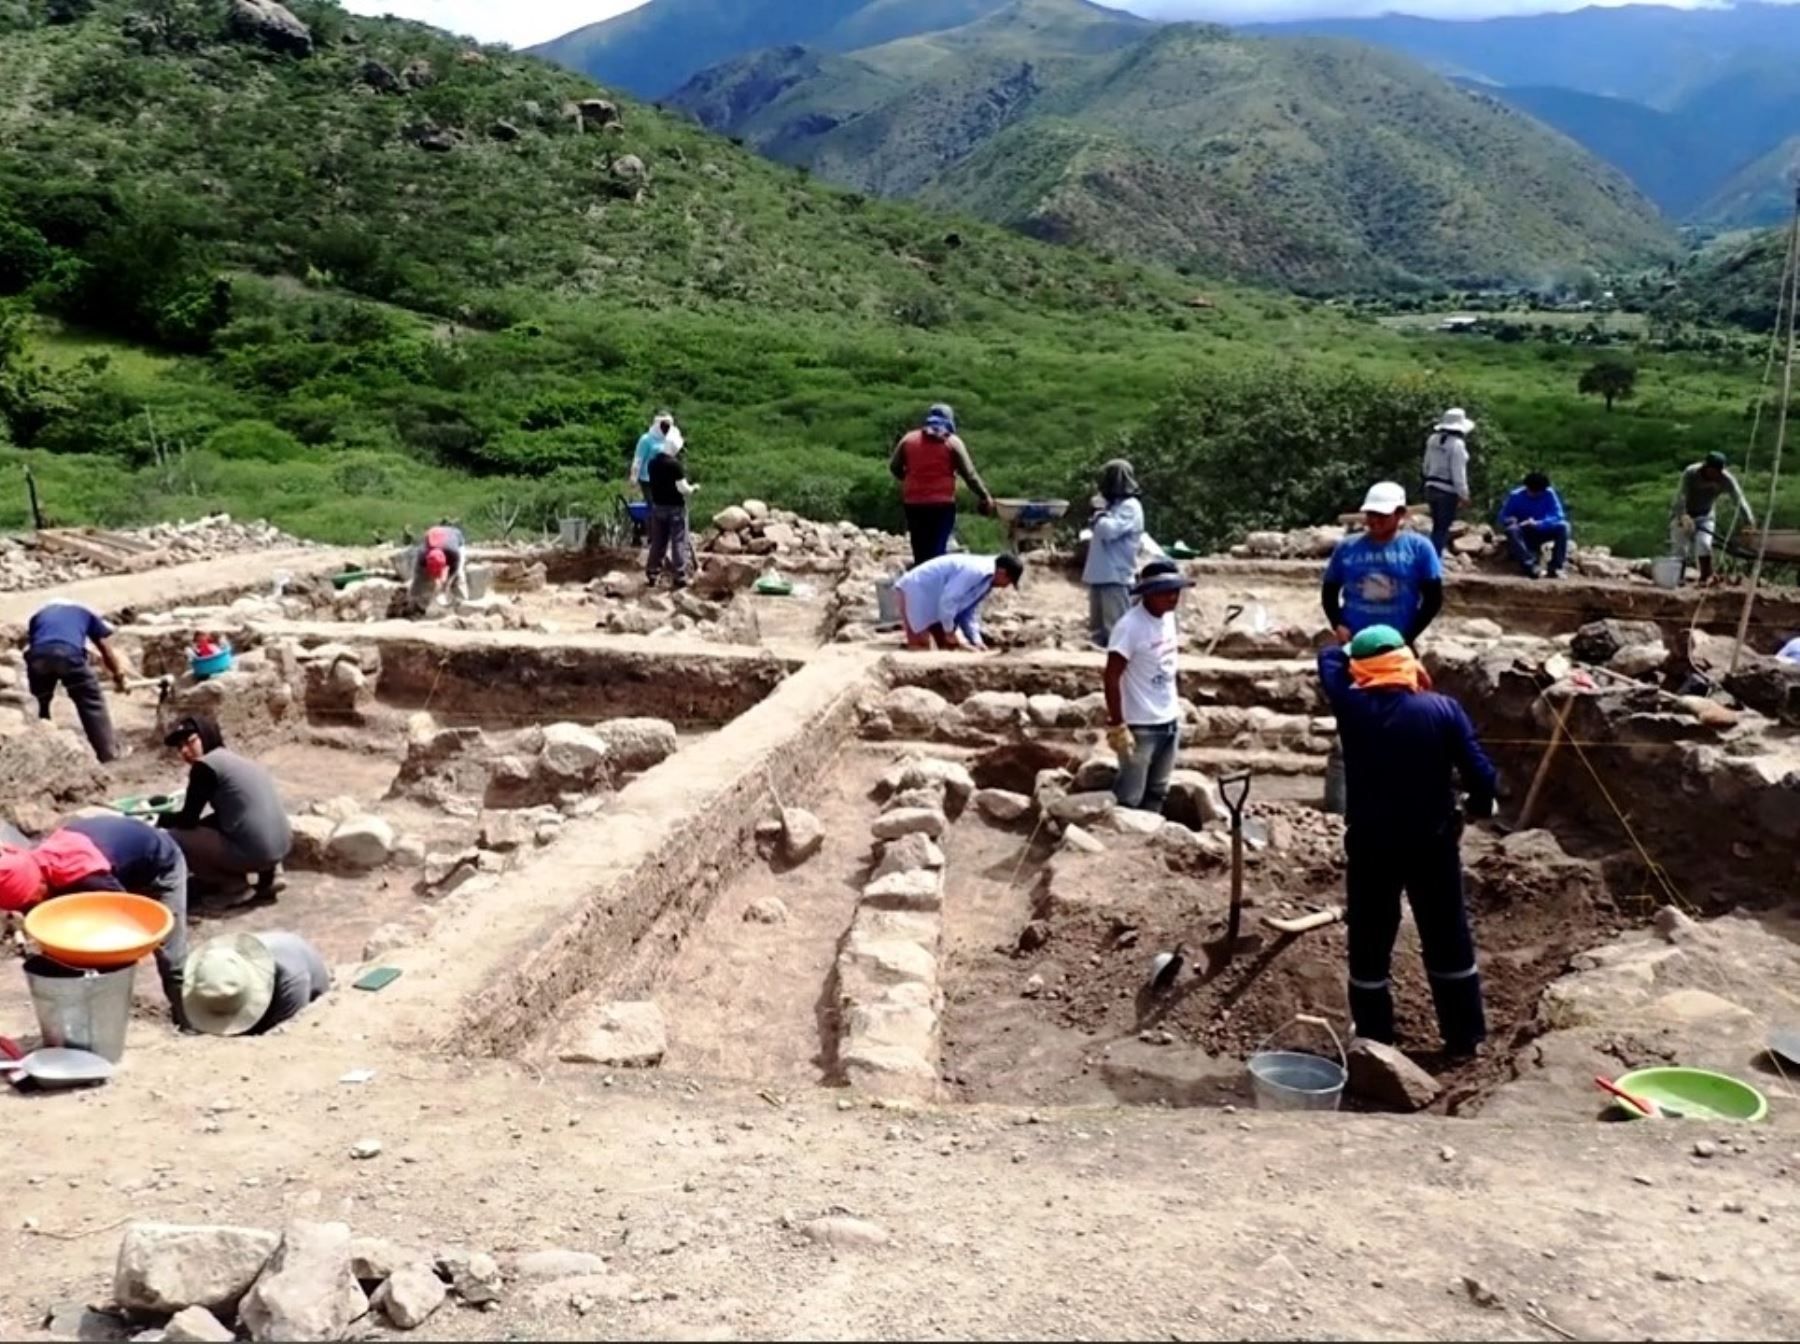 Una misión japonesa de la Universidad de Yamagata, liderada por Atsushi Yamamoto, inició los trabajos de investigación de los vestigios hallados en tres sitios arqueológicos ubicados en la provincia de Jaén, en Cajamarca. ANDINA/Difusión